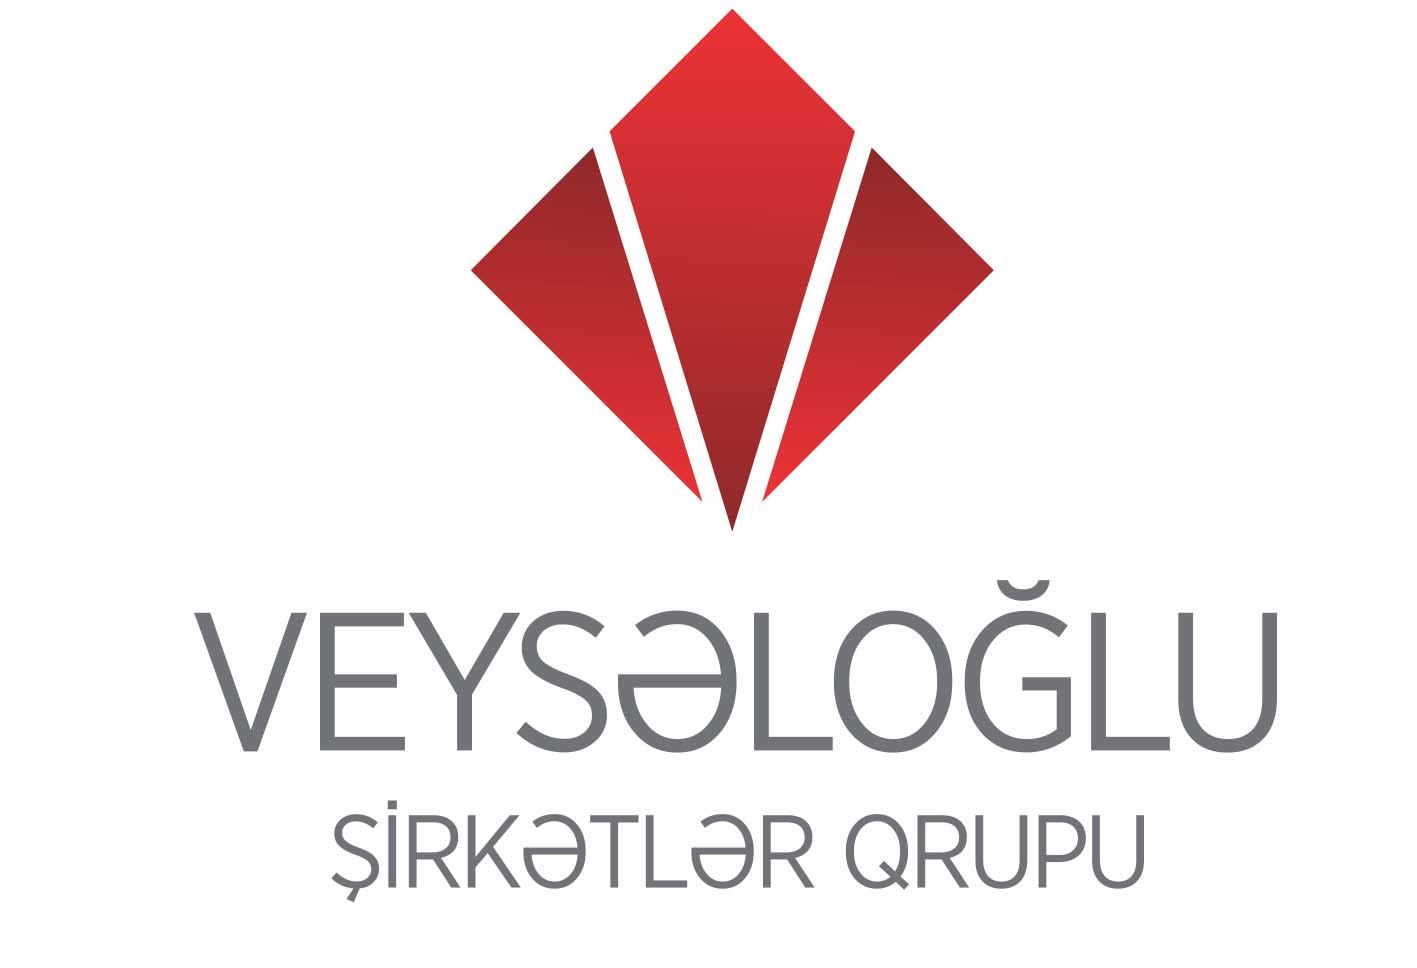 Группа Компаний Veyseloglu поддерживает школьников, стремящихся в университет